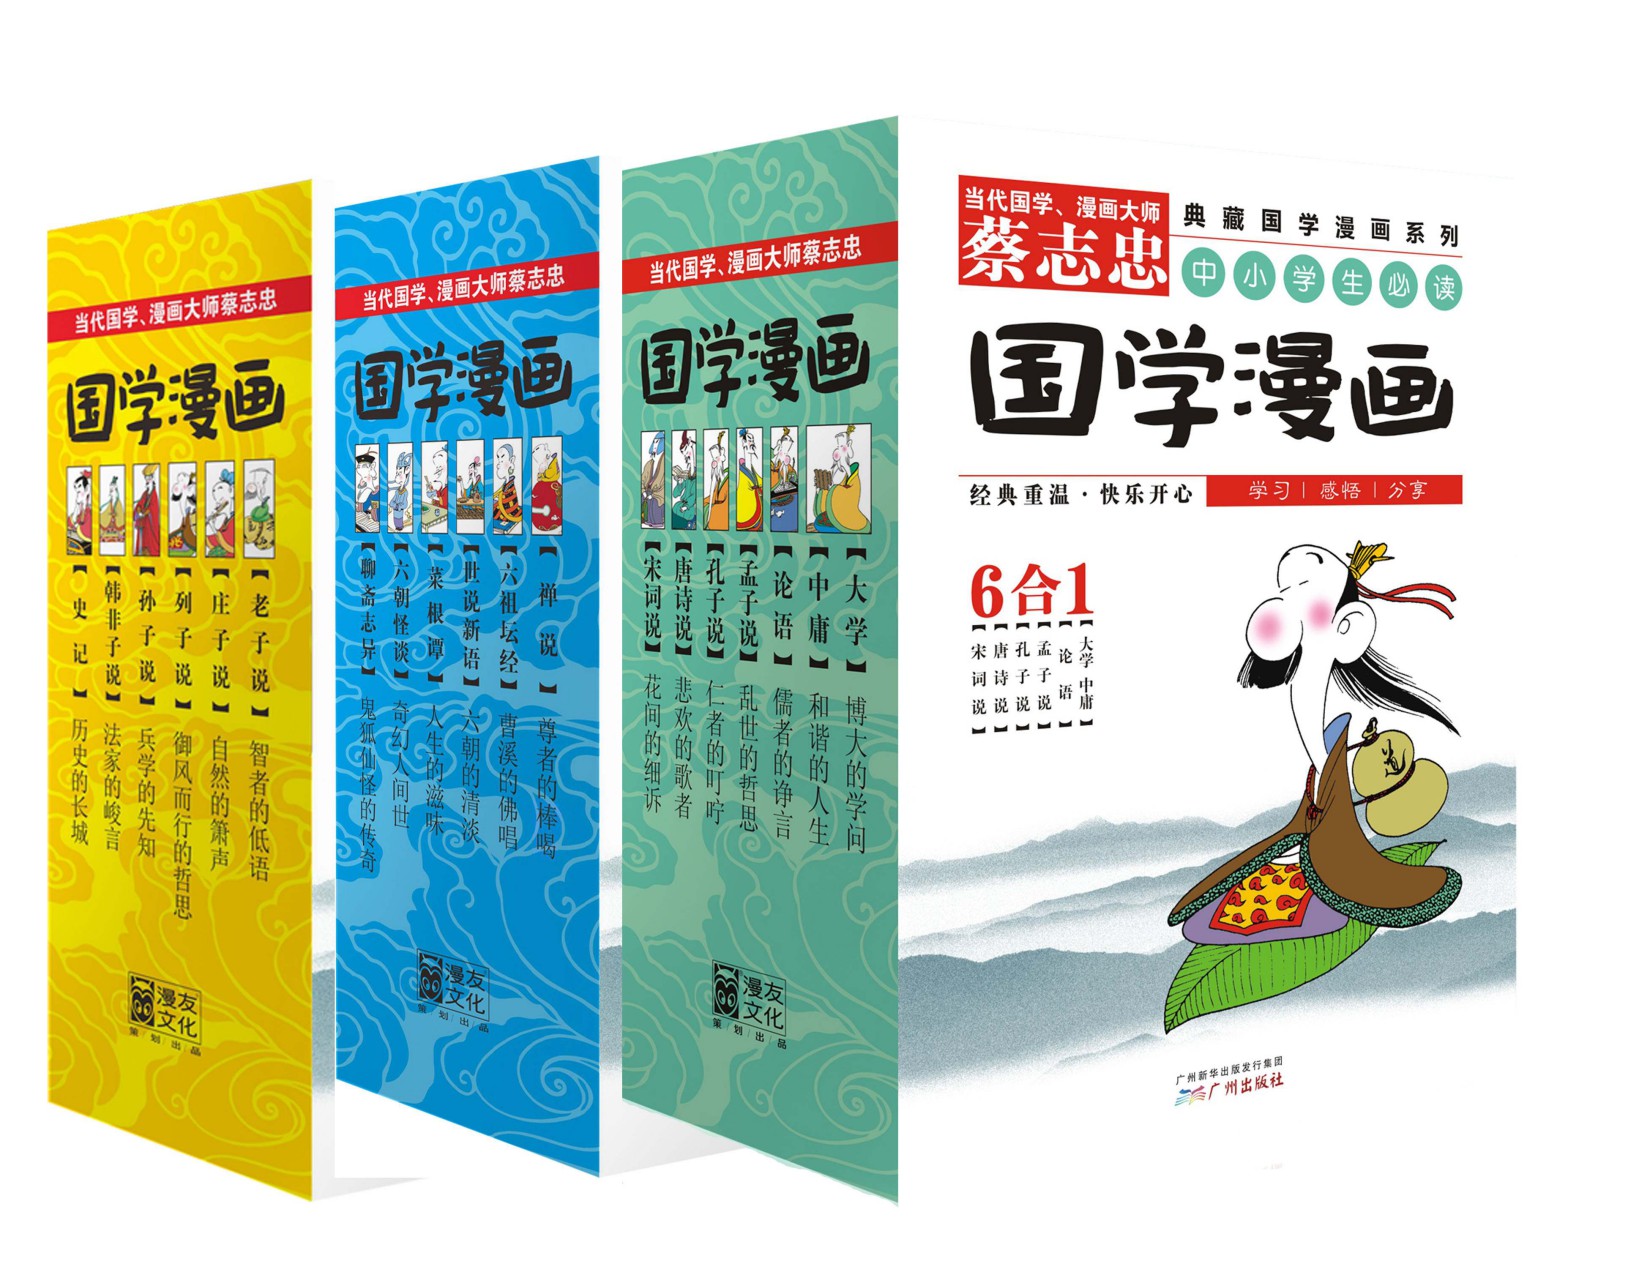 蔡志忠典藏国学漫画系列大全集(套装共18册)